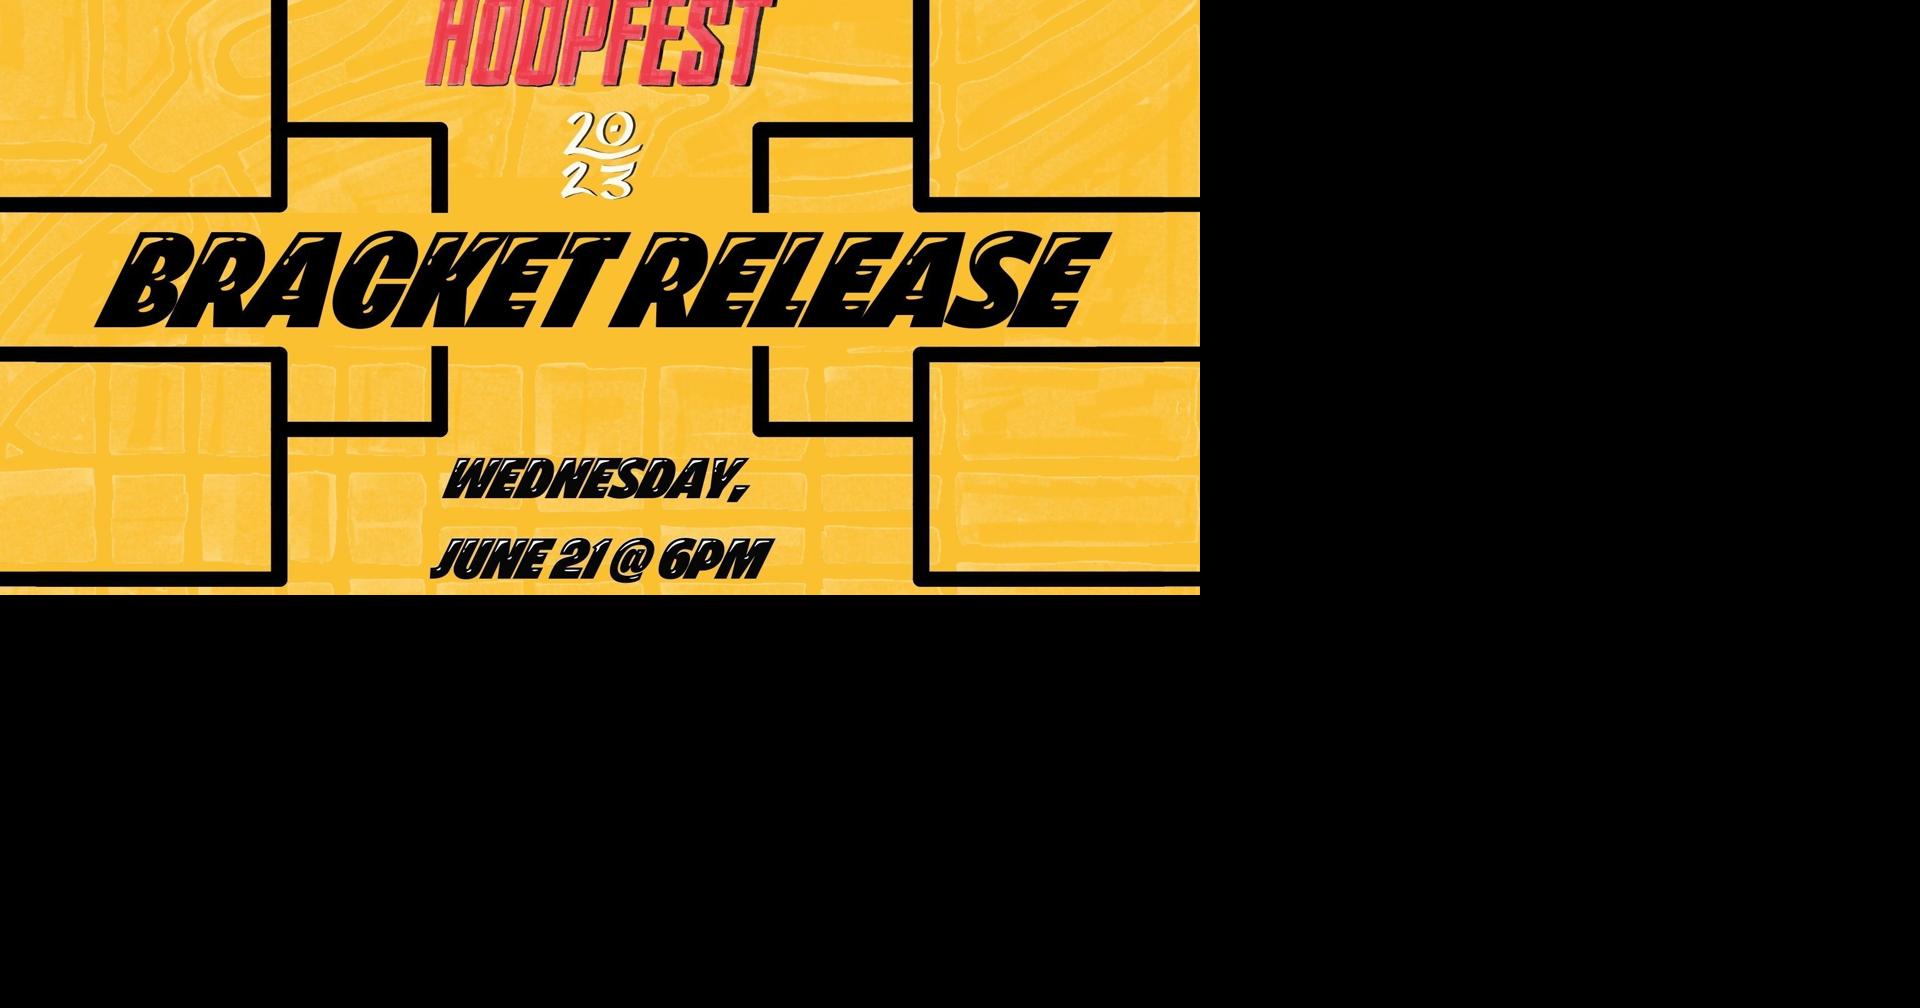 Hoopfest brackets now live on Hoopfest 2023 app News